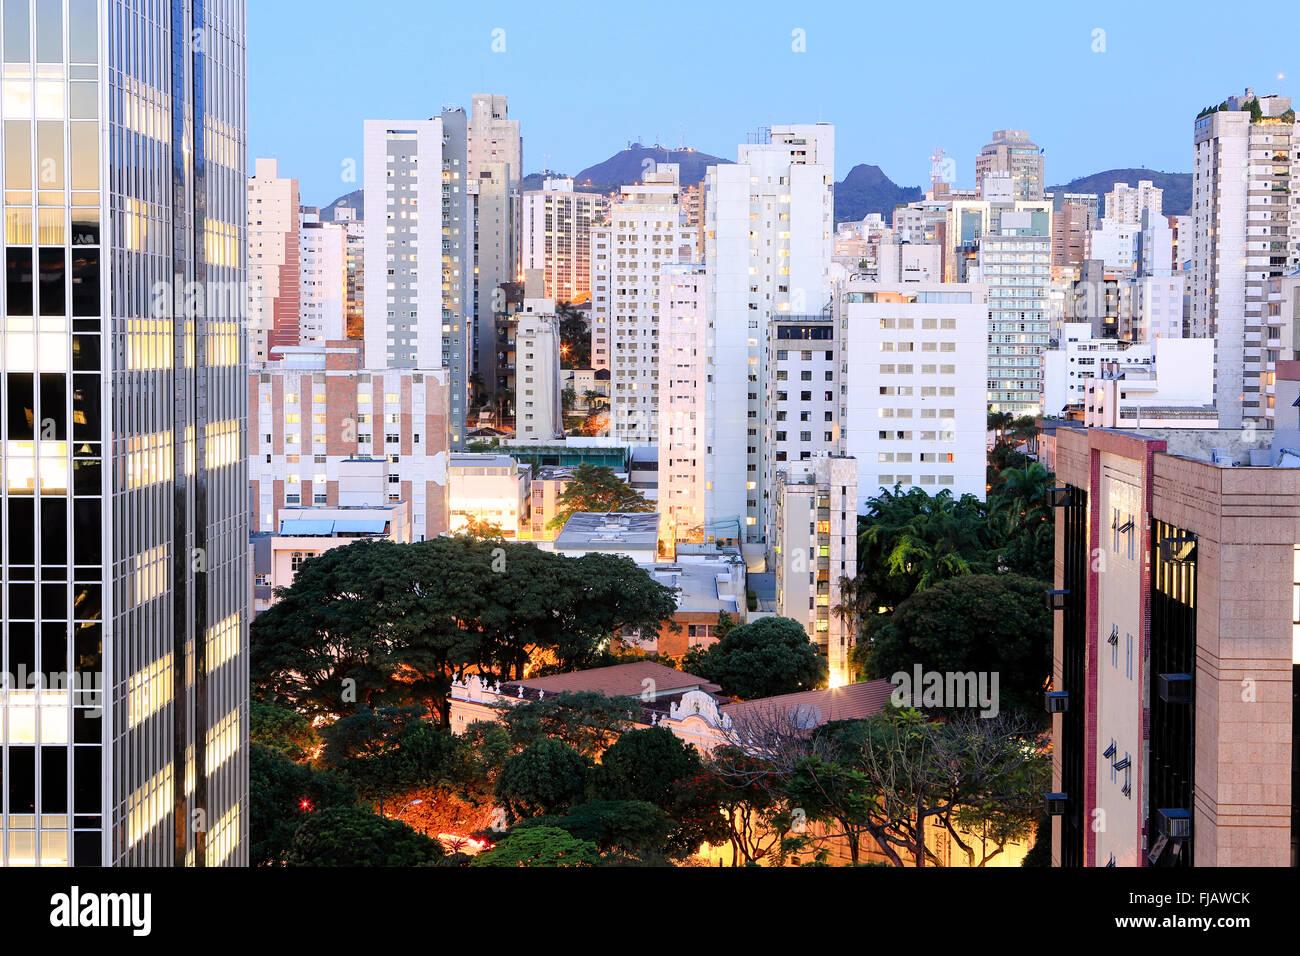 Belo Horizonte skyline - Central Business District de la capitale de l'état de Minas Gerais, Brésil montrant un mélange de bâtiments résidentiels et d'affaires Banque D'Images